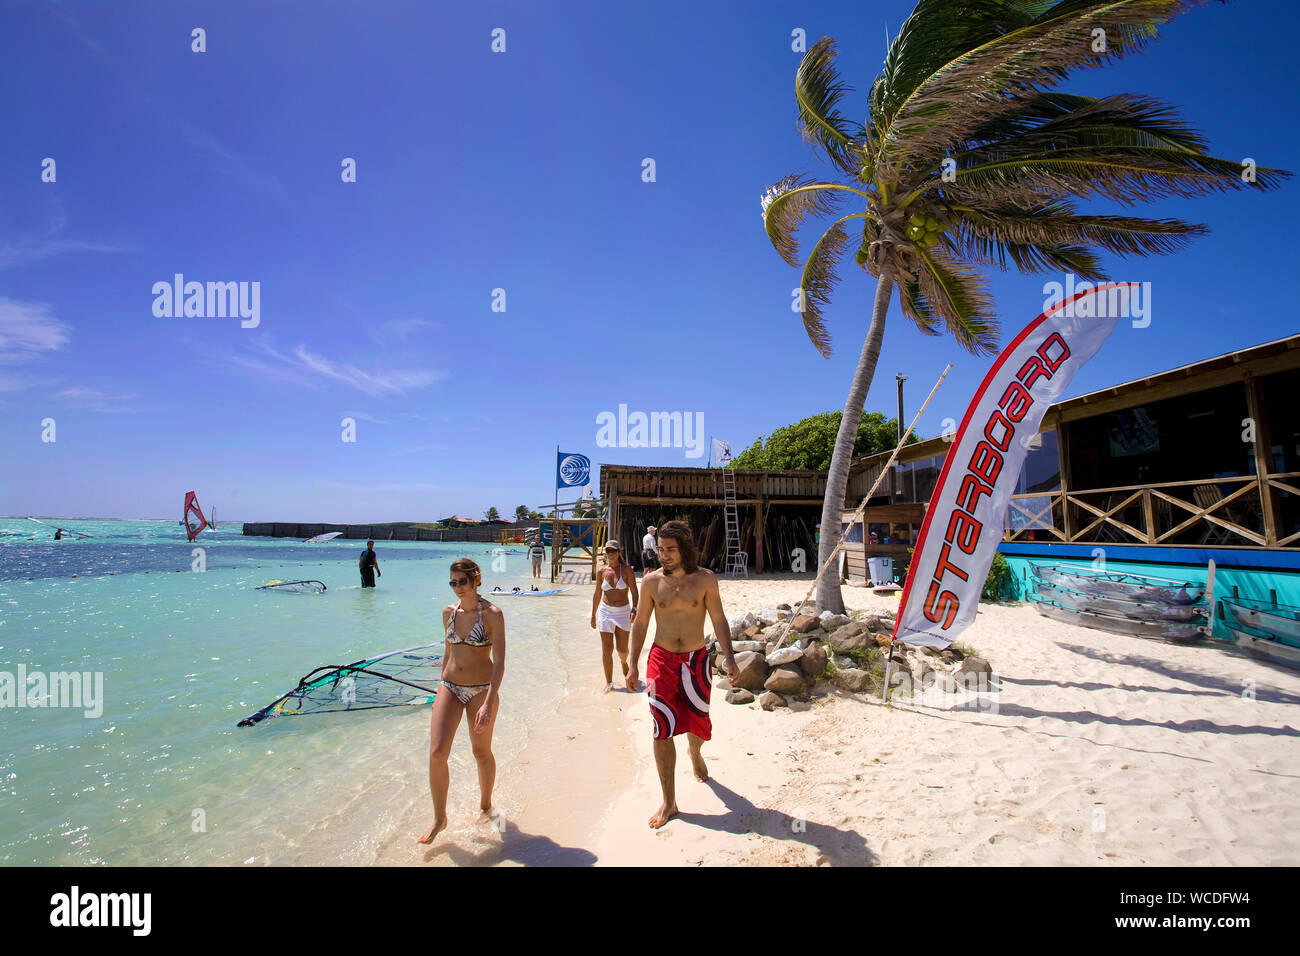 Surfers paradise, scuola di surf sulla spiaggia di Lac, Baai Sorobon Bay, a sud est di Bonaire, Antille olandesi Foto Stock